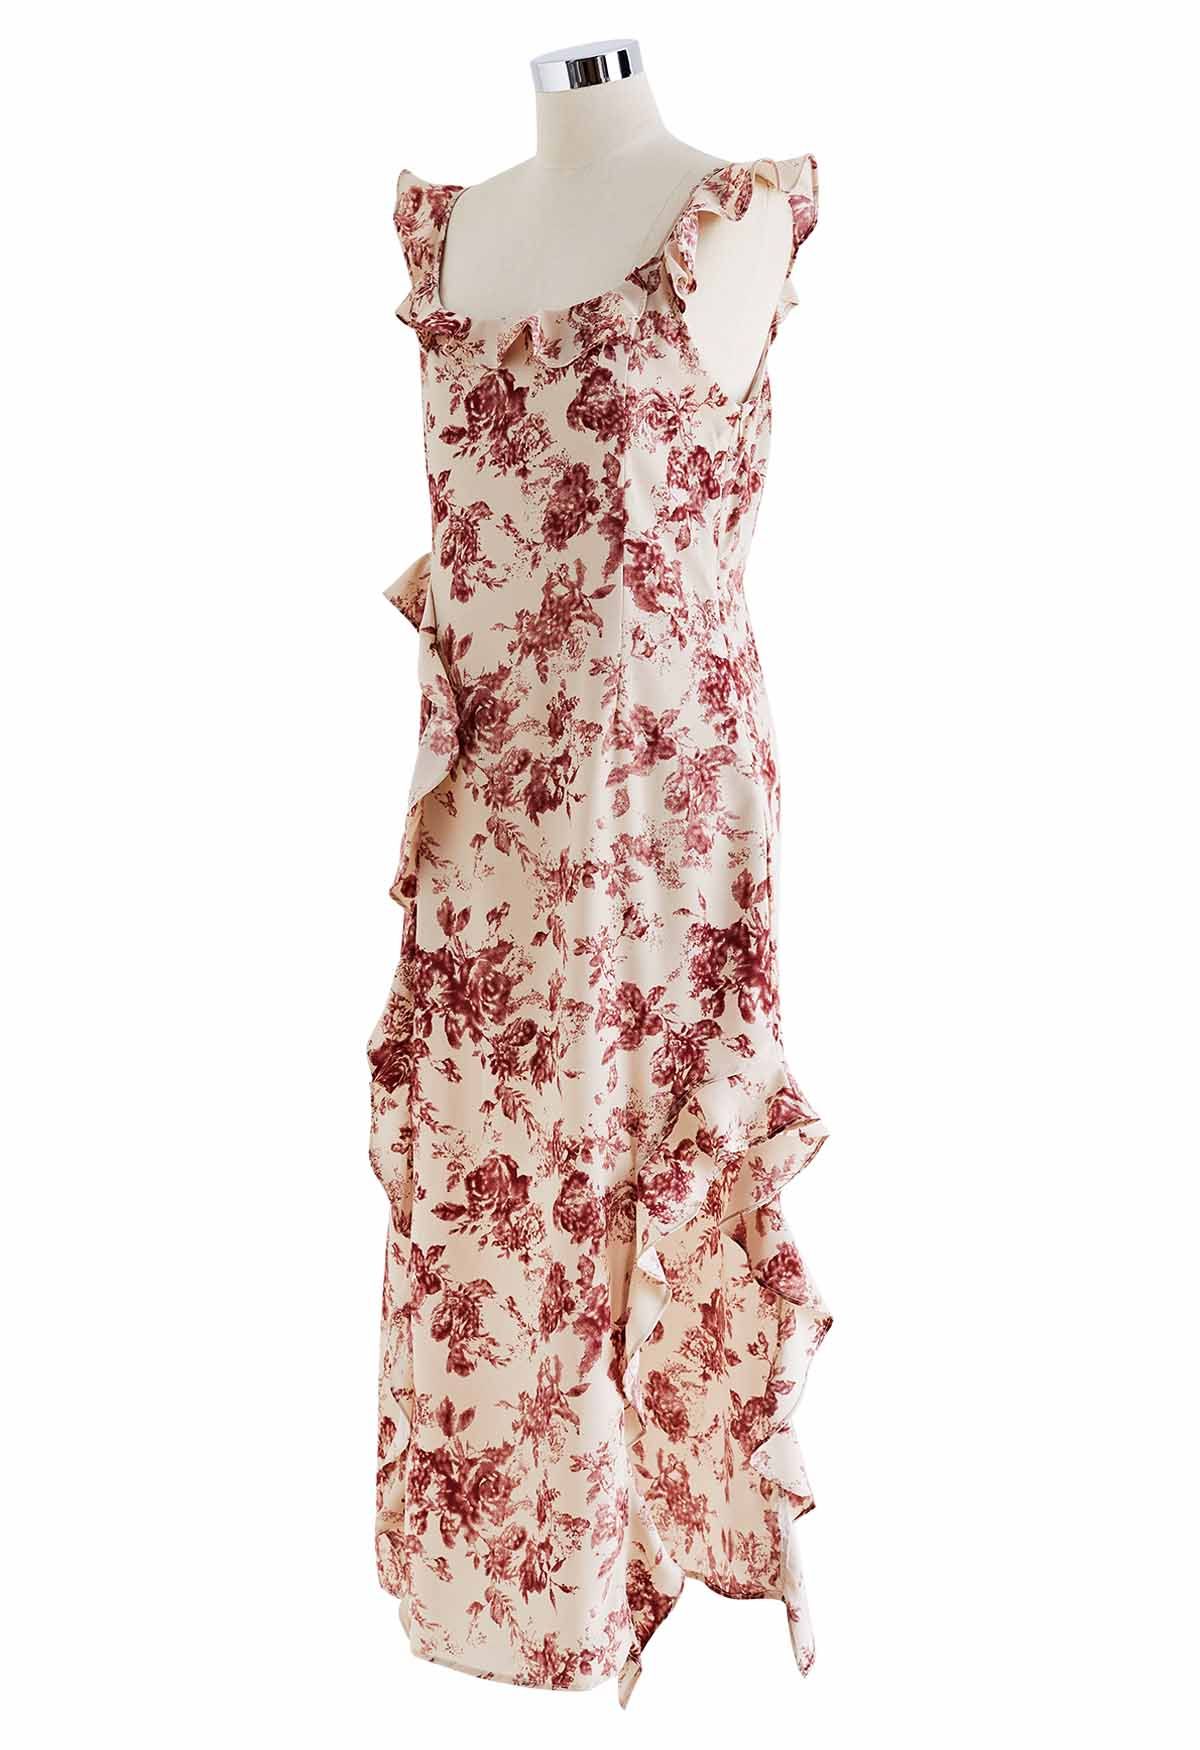 Rostfarbenes, gerüschtes, seitlich geschlitztes Cami-Kleid mit Blumenmuster